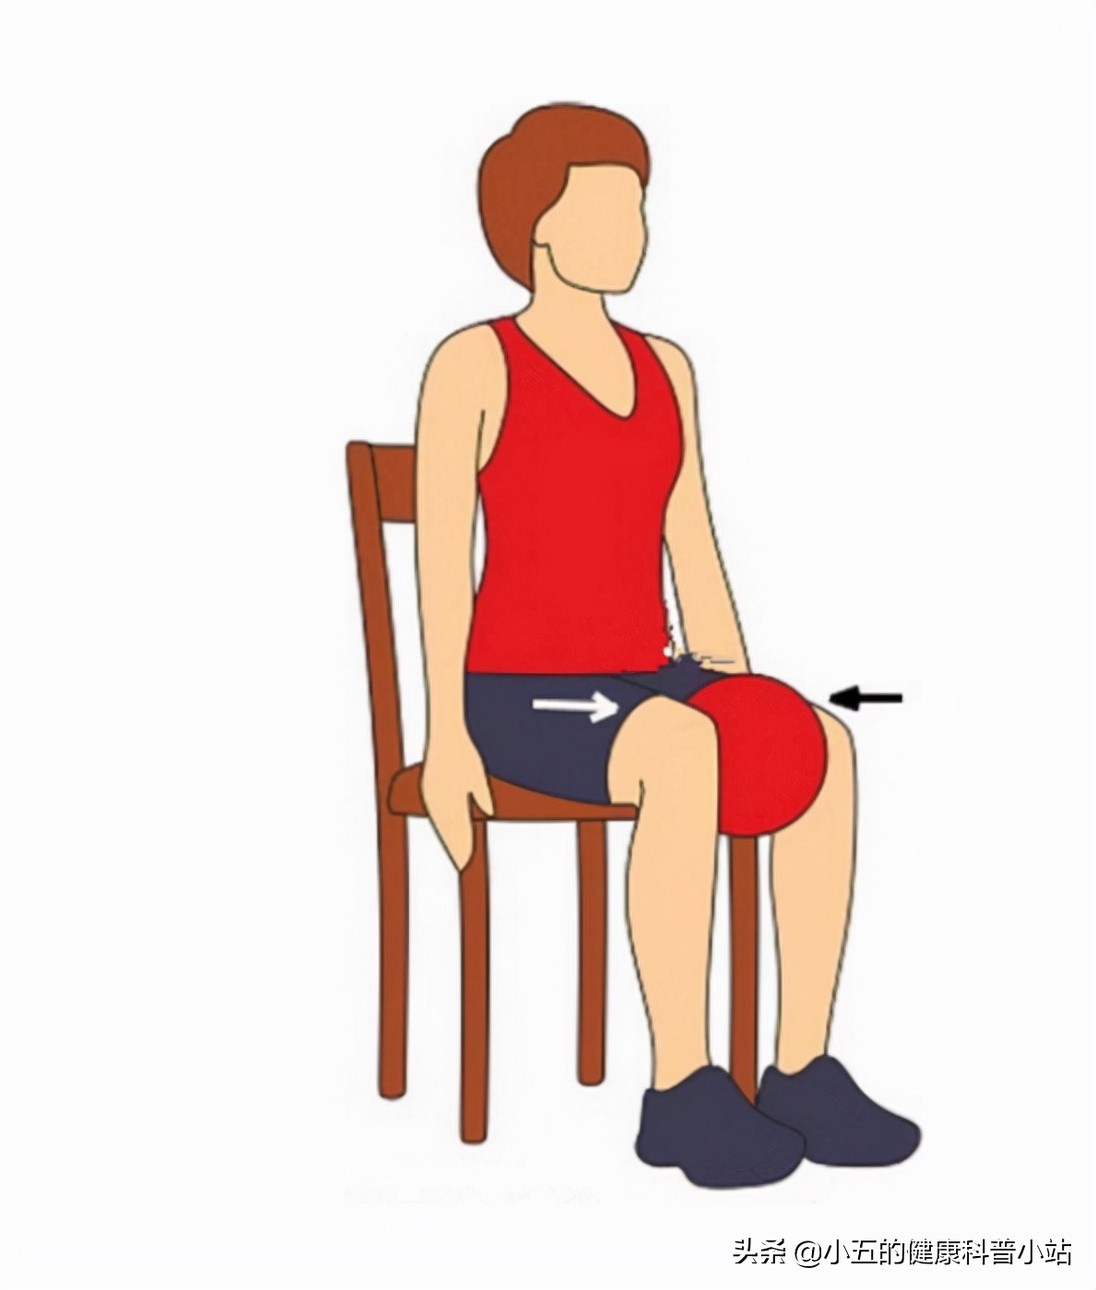 膝关节咔咔作响，上下楼疼痛不适，髌骨软化症到底该如何治疗